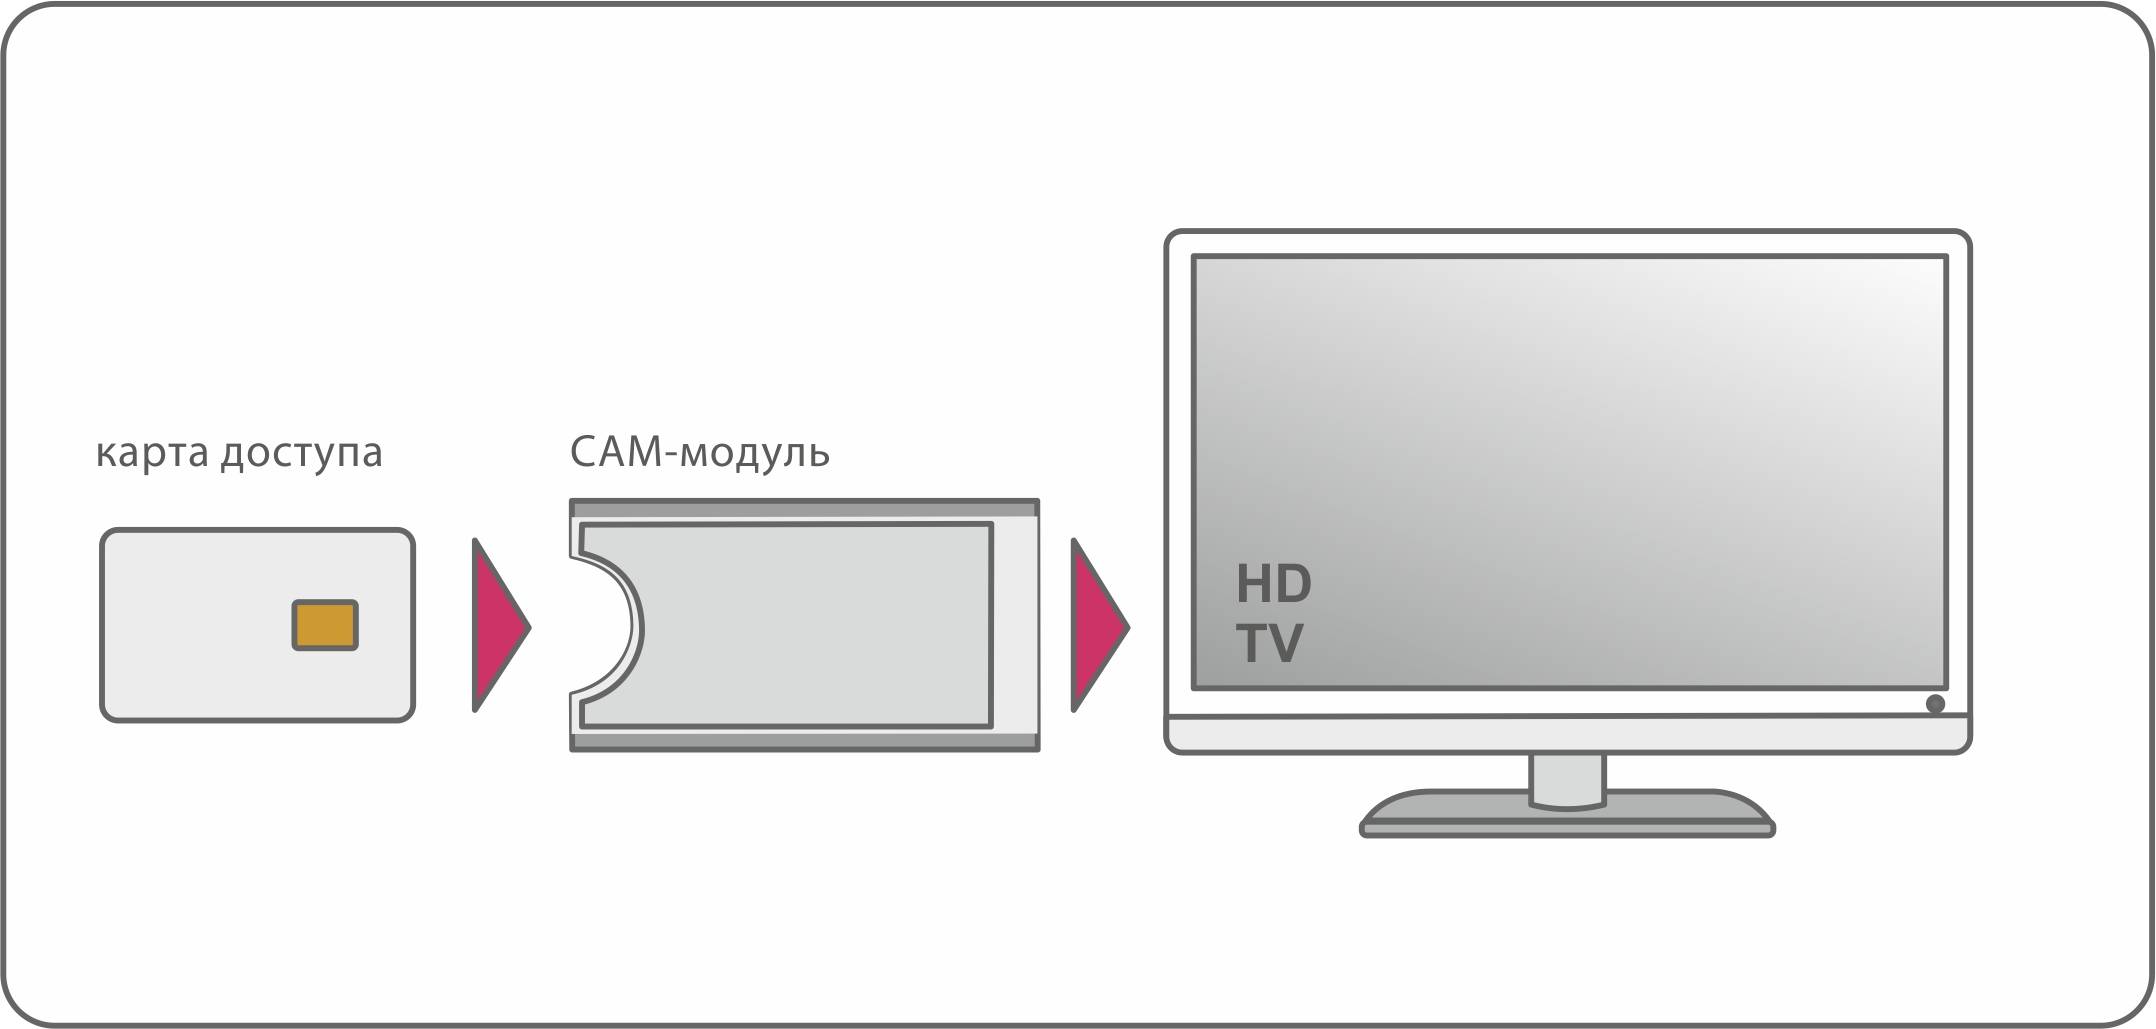 Как подключить и настроить smart tv - инструкция